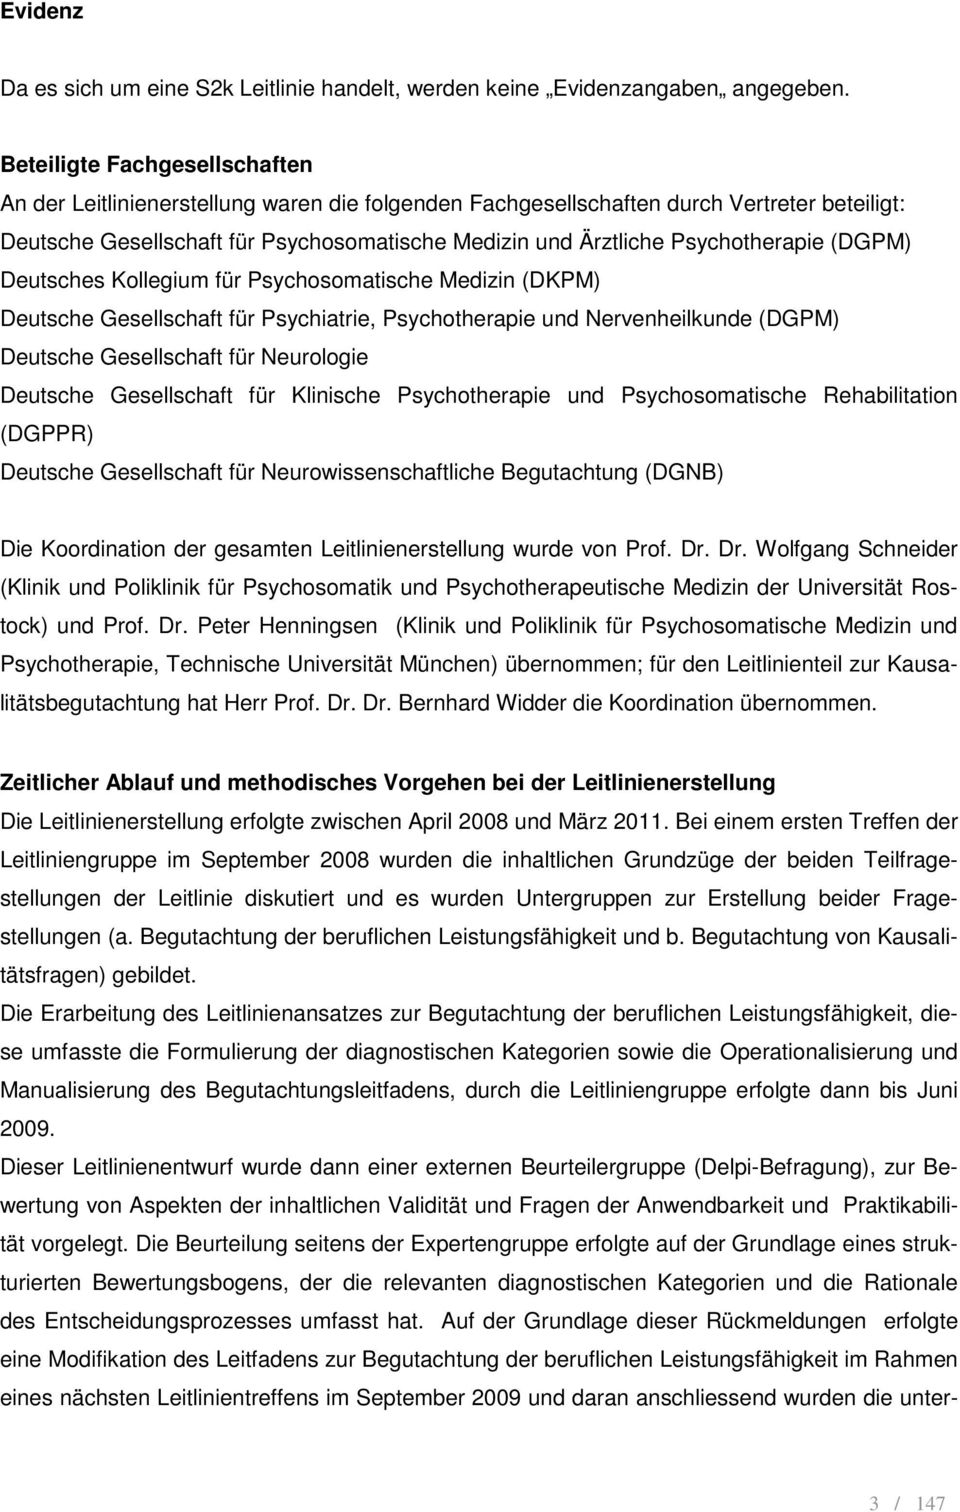 Psychotherapie (DGPM) Deutsches Kollegium für Psychosomatische Medizin (DKPM) Deutsche Gesellschaft für Psychiatrie, Psychotherapie und Nervenheilkunde (DGPM) Deutsche Gesellschaft für Neurologie